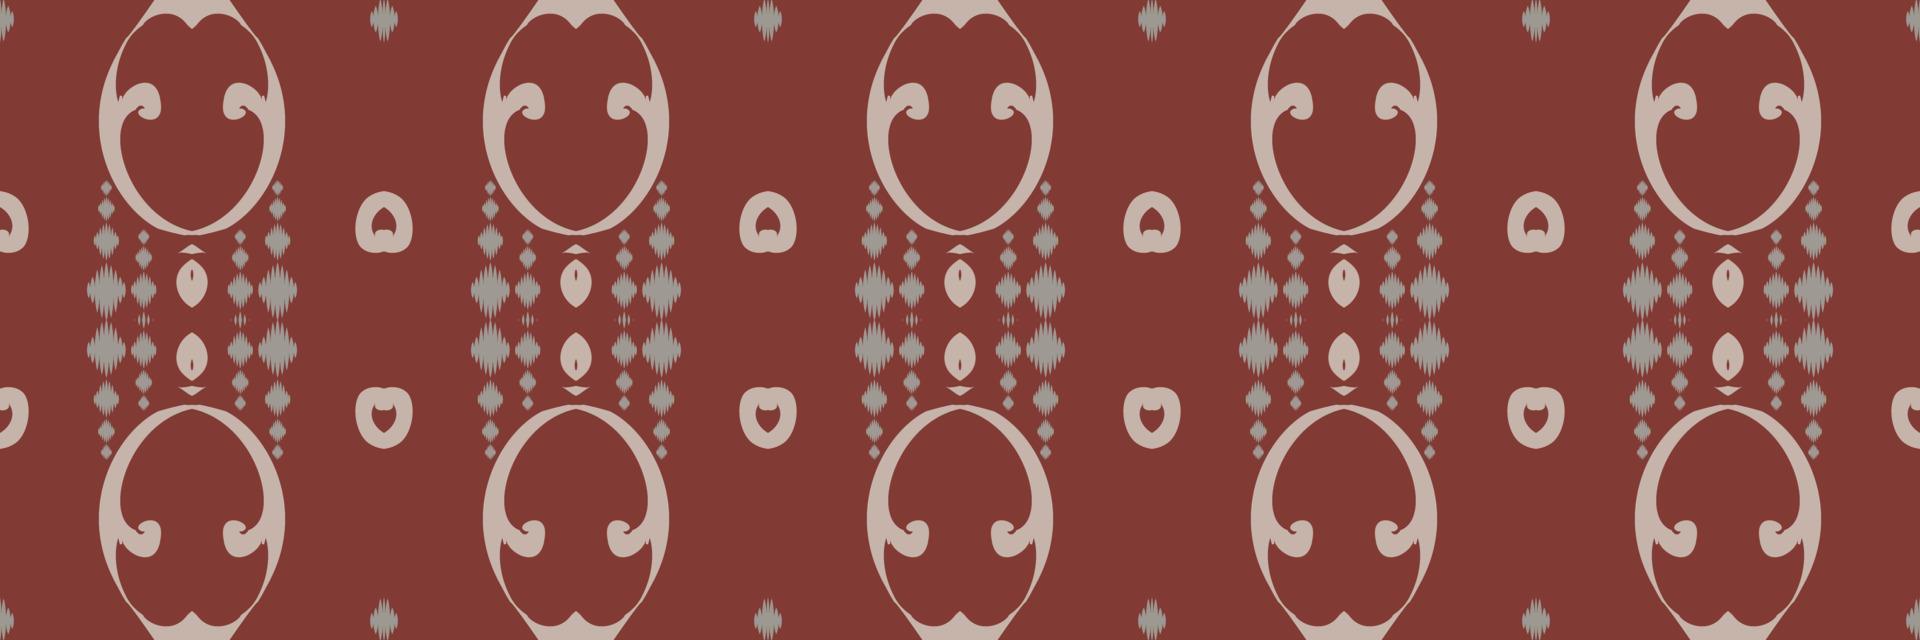 ikkat ou ikat flor batik têxtil padrão sem costura design de vetor digital para impressão saree kurti borneo tecido borda escova símbolos amostras roupas de festa